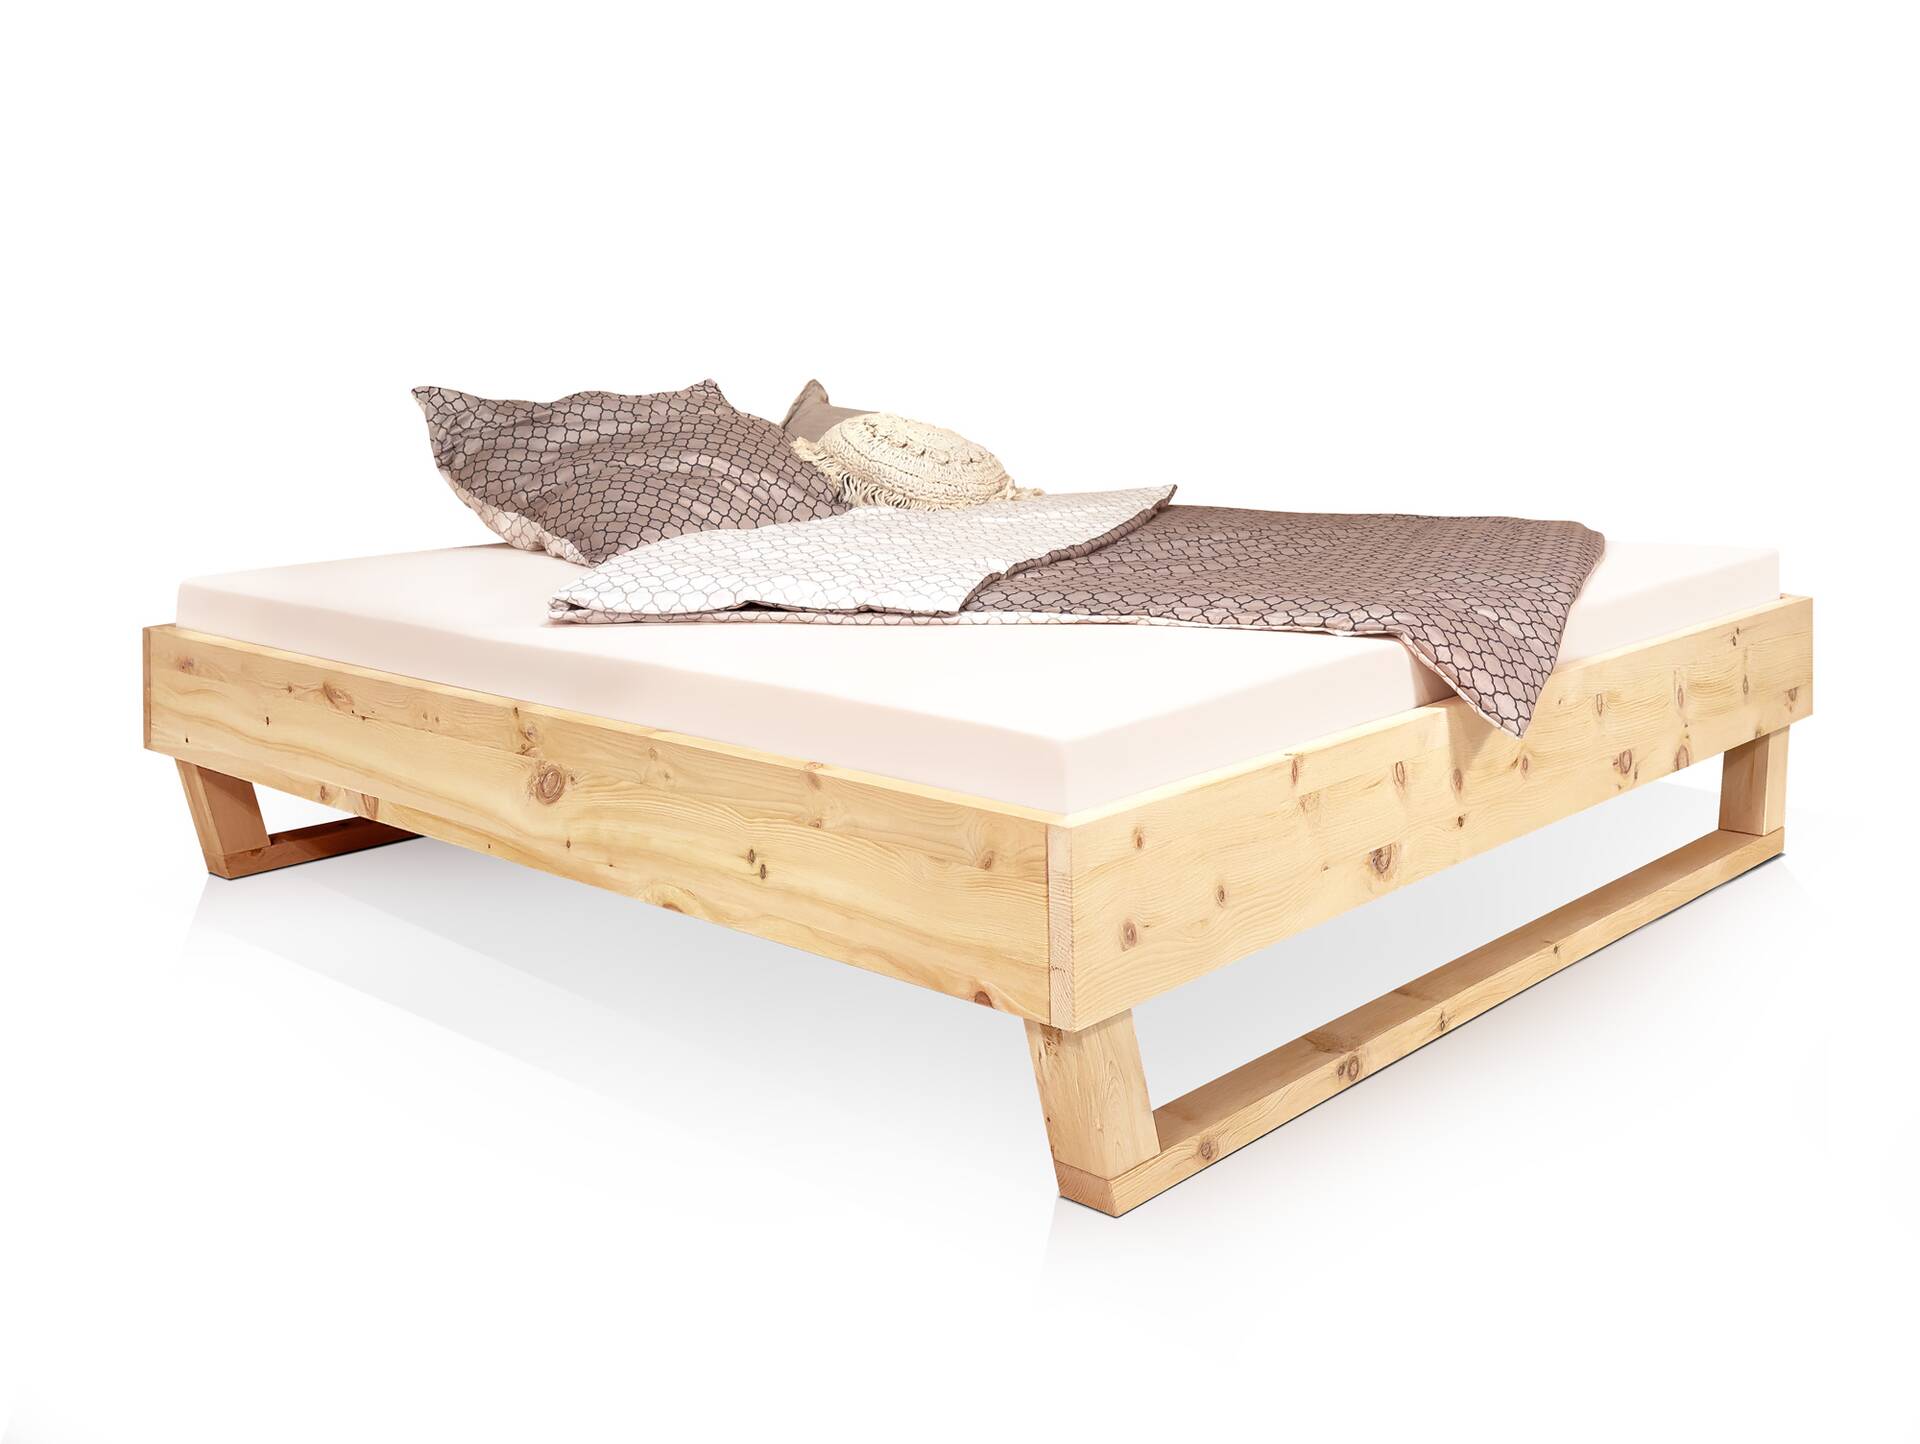 ZABINO Holz-Kufenbett aus Zirbe, Material Massivholz, mit/ohne Kopfteil 120 x 220 cm | Zirbe unbehandelt | ohne Kopfteil